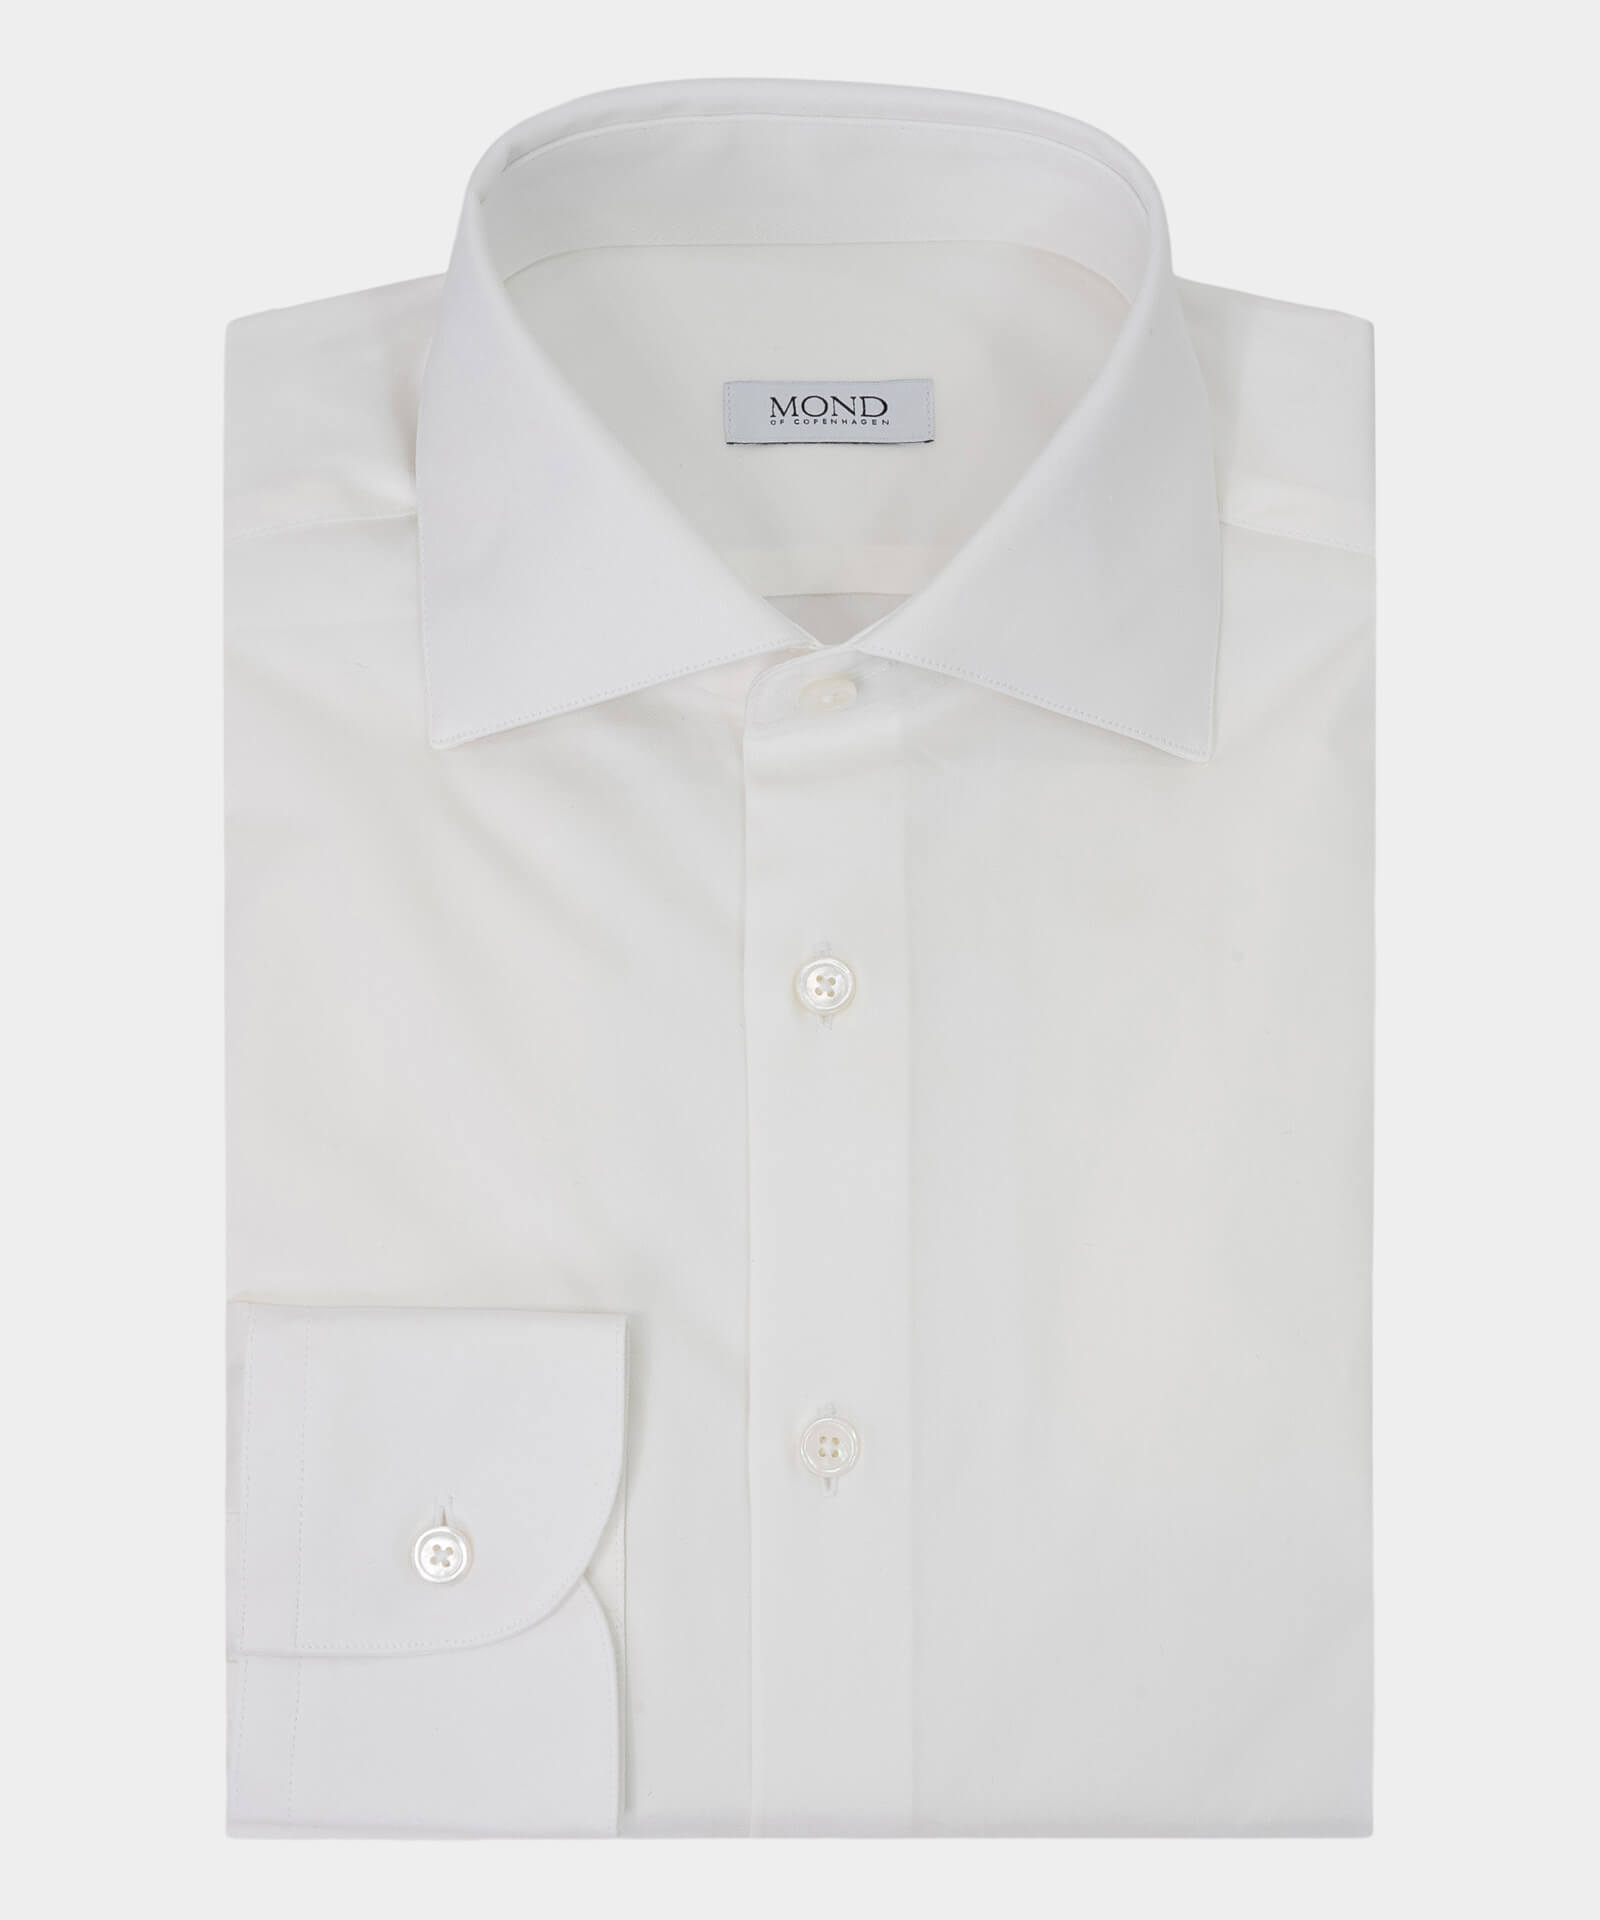 soft off-white denim shirt